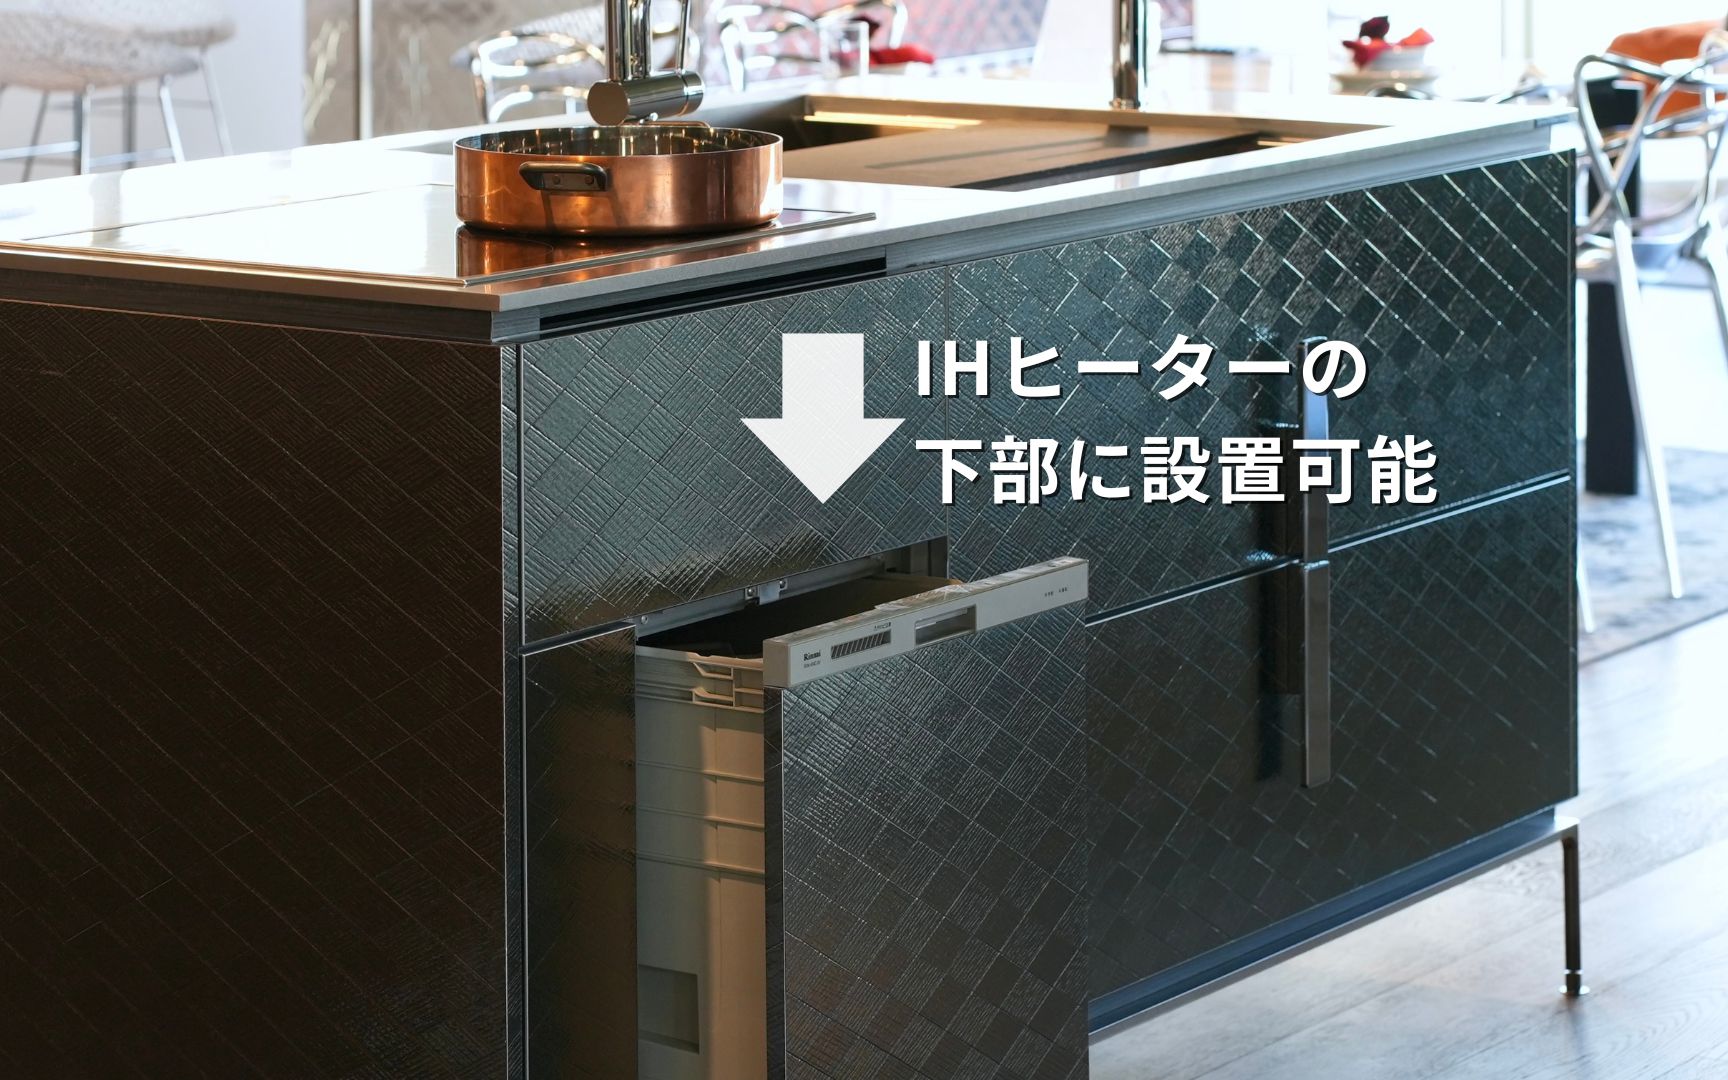 キッチン幅はコンパクトに、けど食洗機は設置したい方へ、おすすめの機種